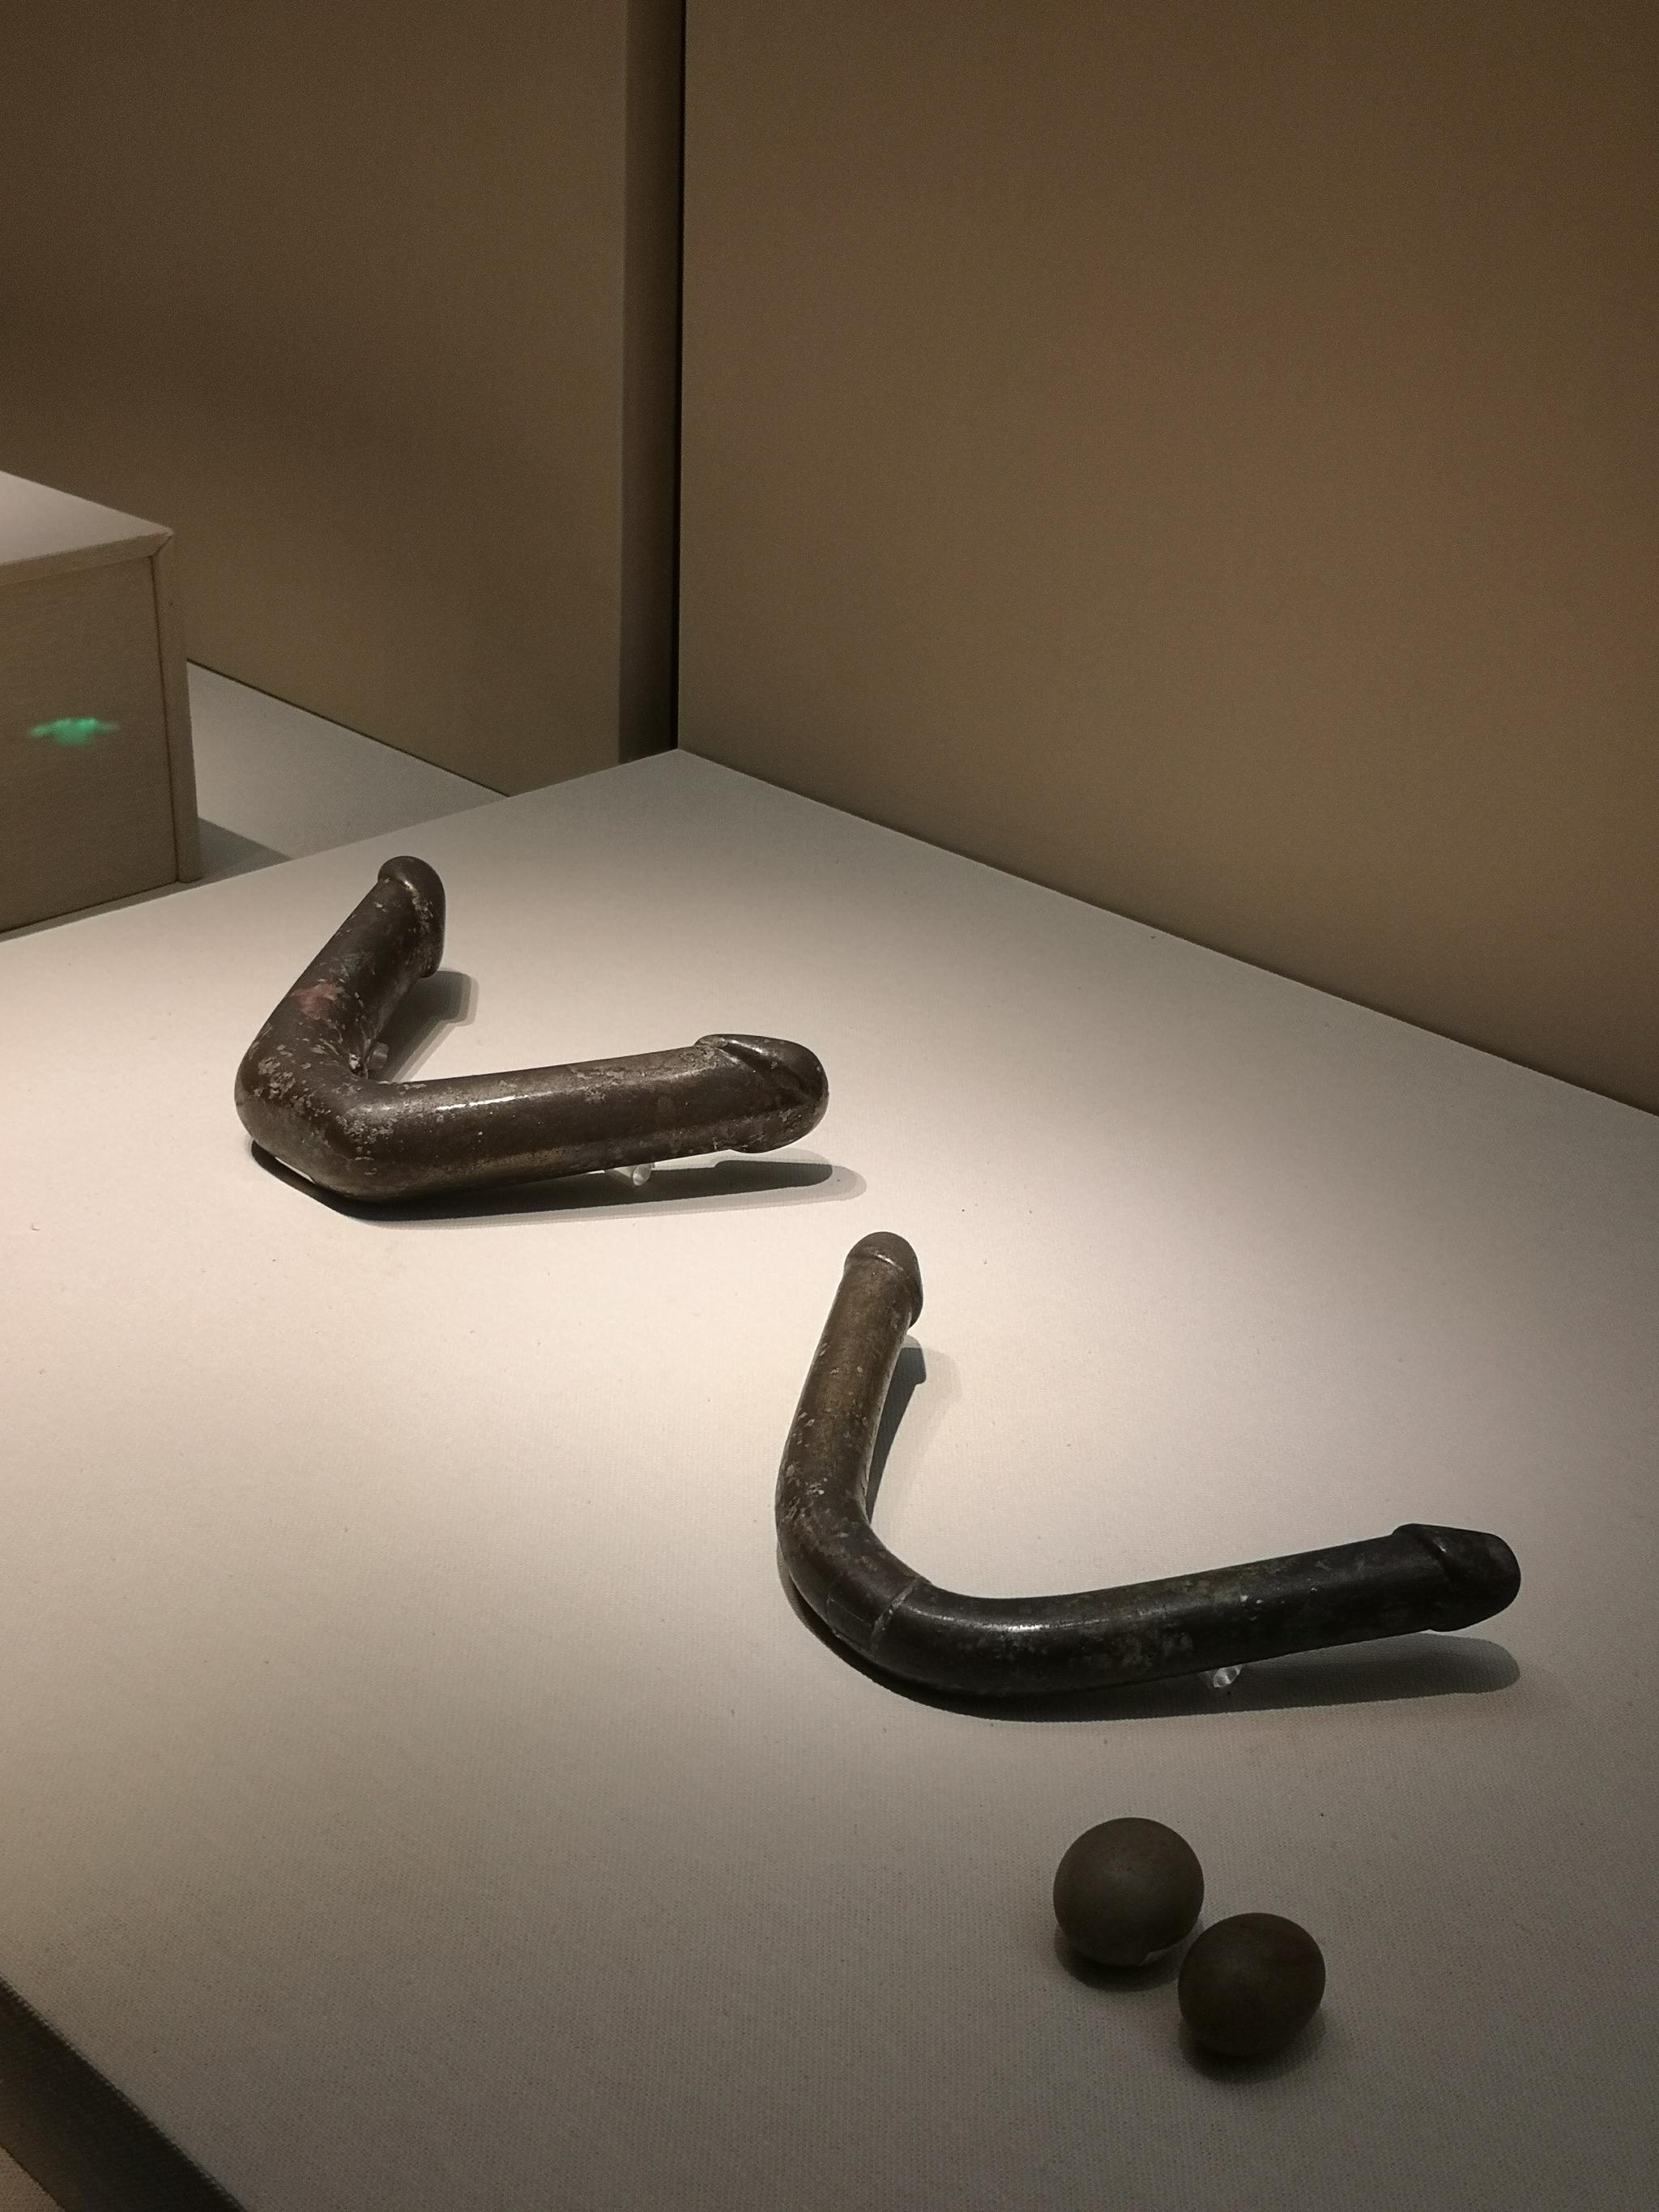 河北博物院藏满城汉墓出土的汉代铜性具